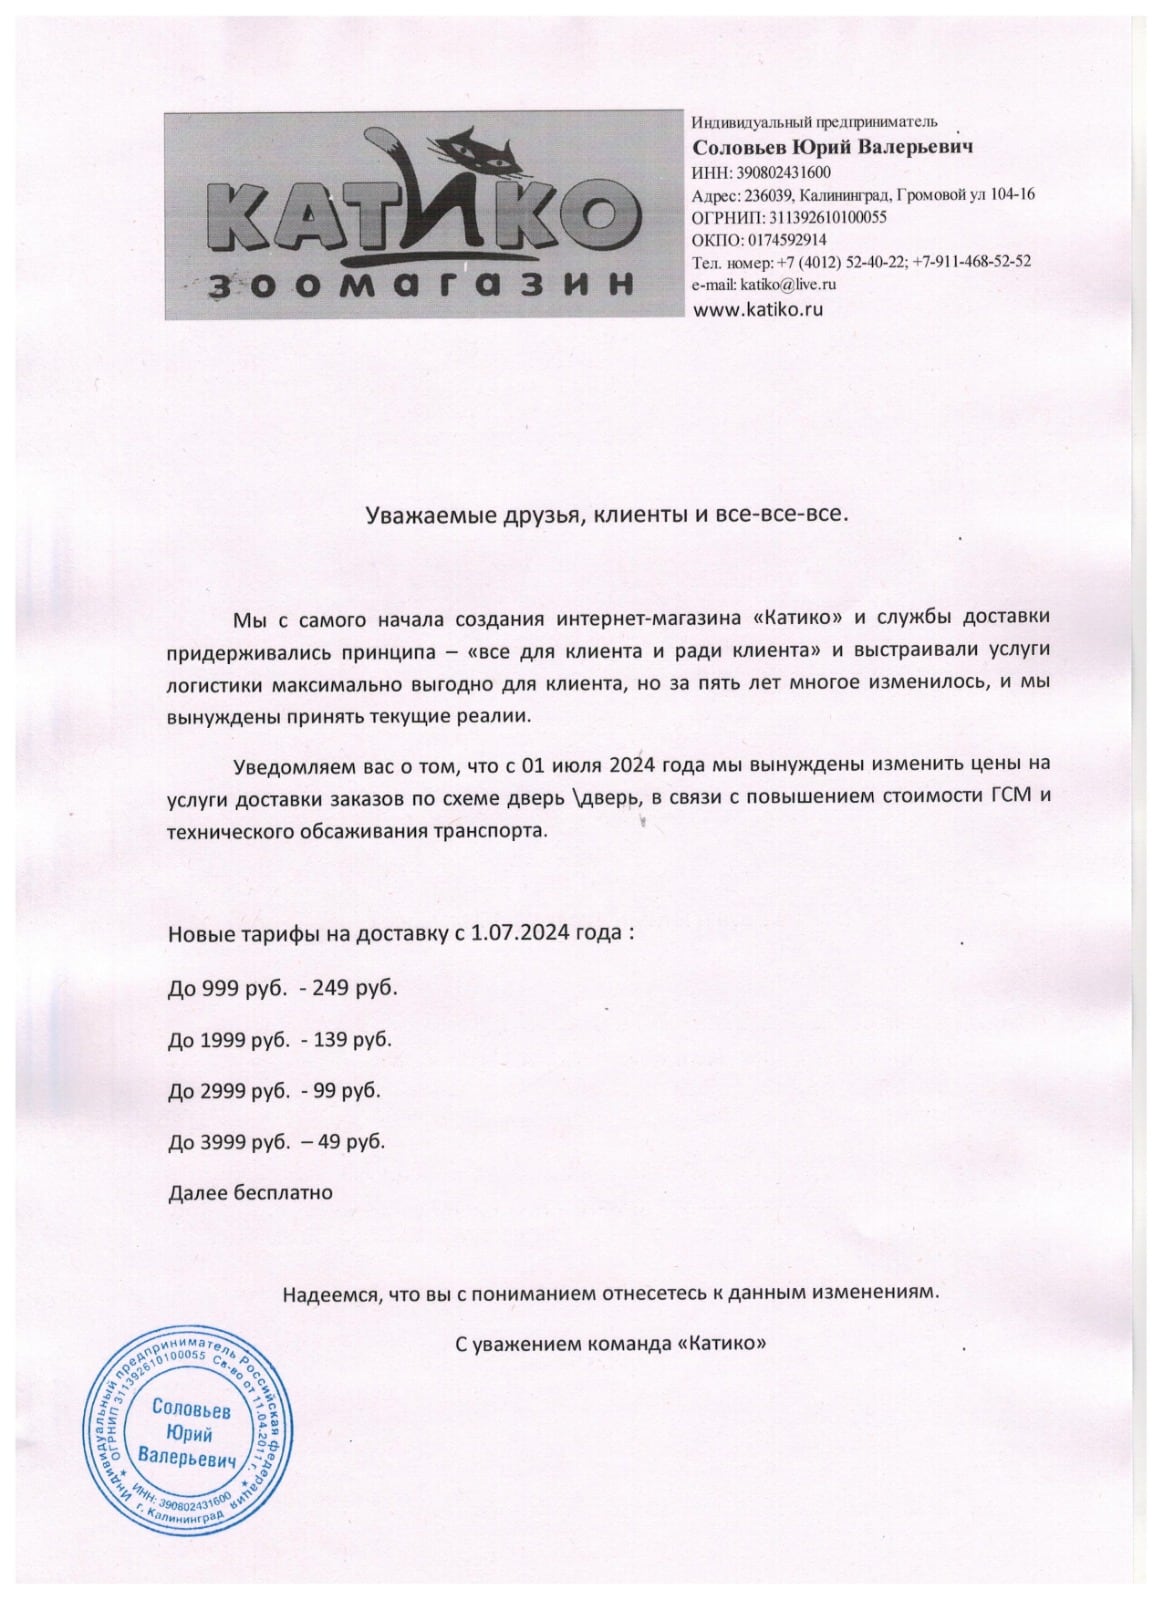 Изменение условий бесплатной доставки зоотоваров в Калининграде с 2024 года